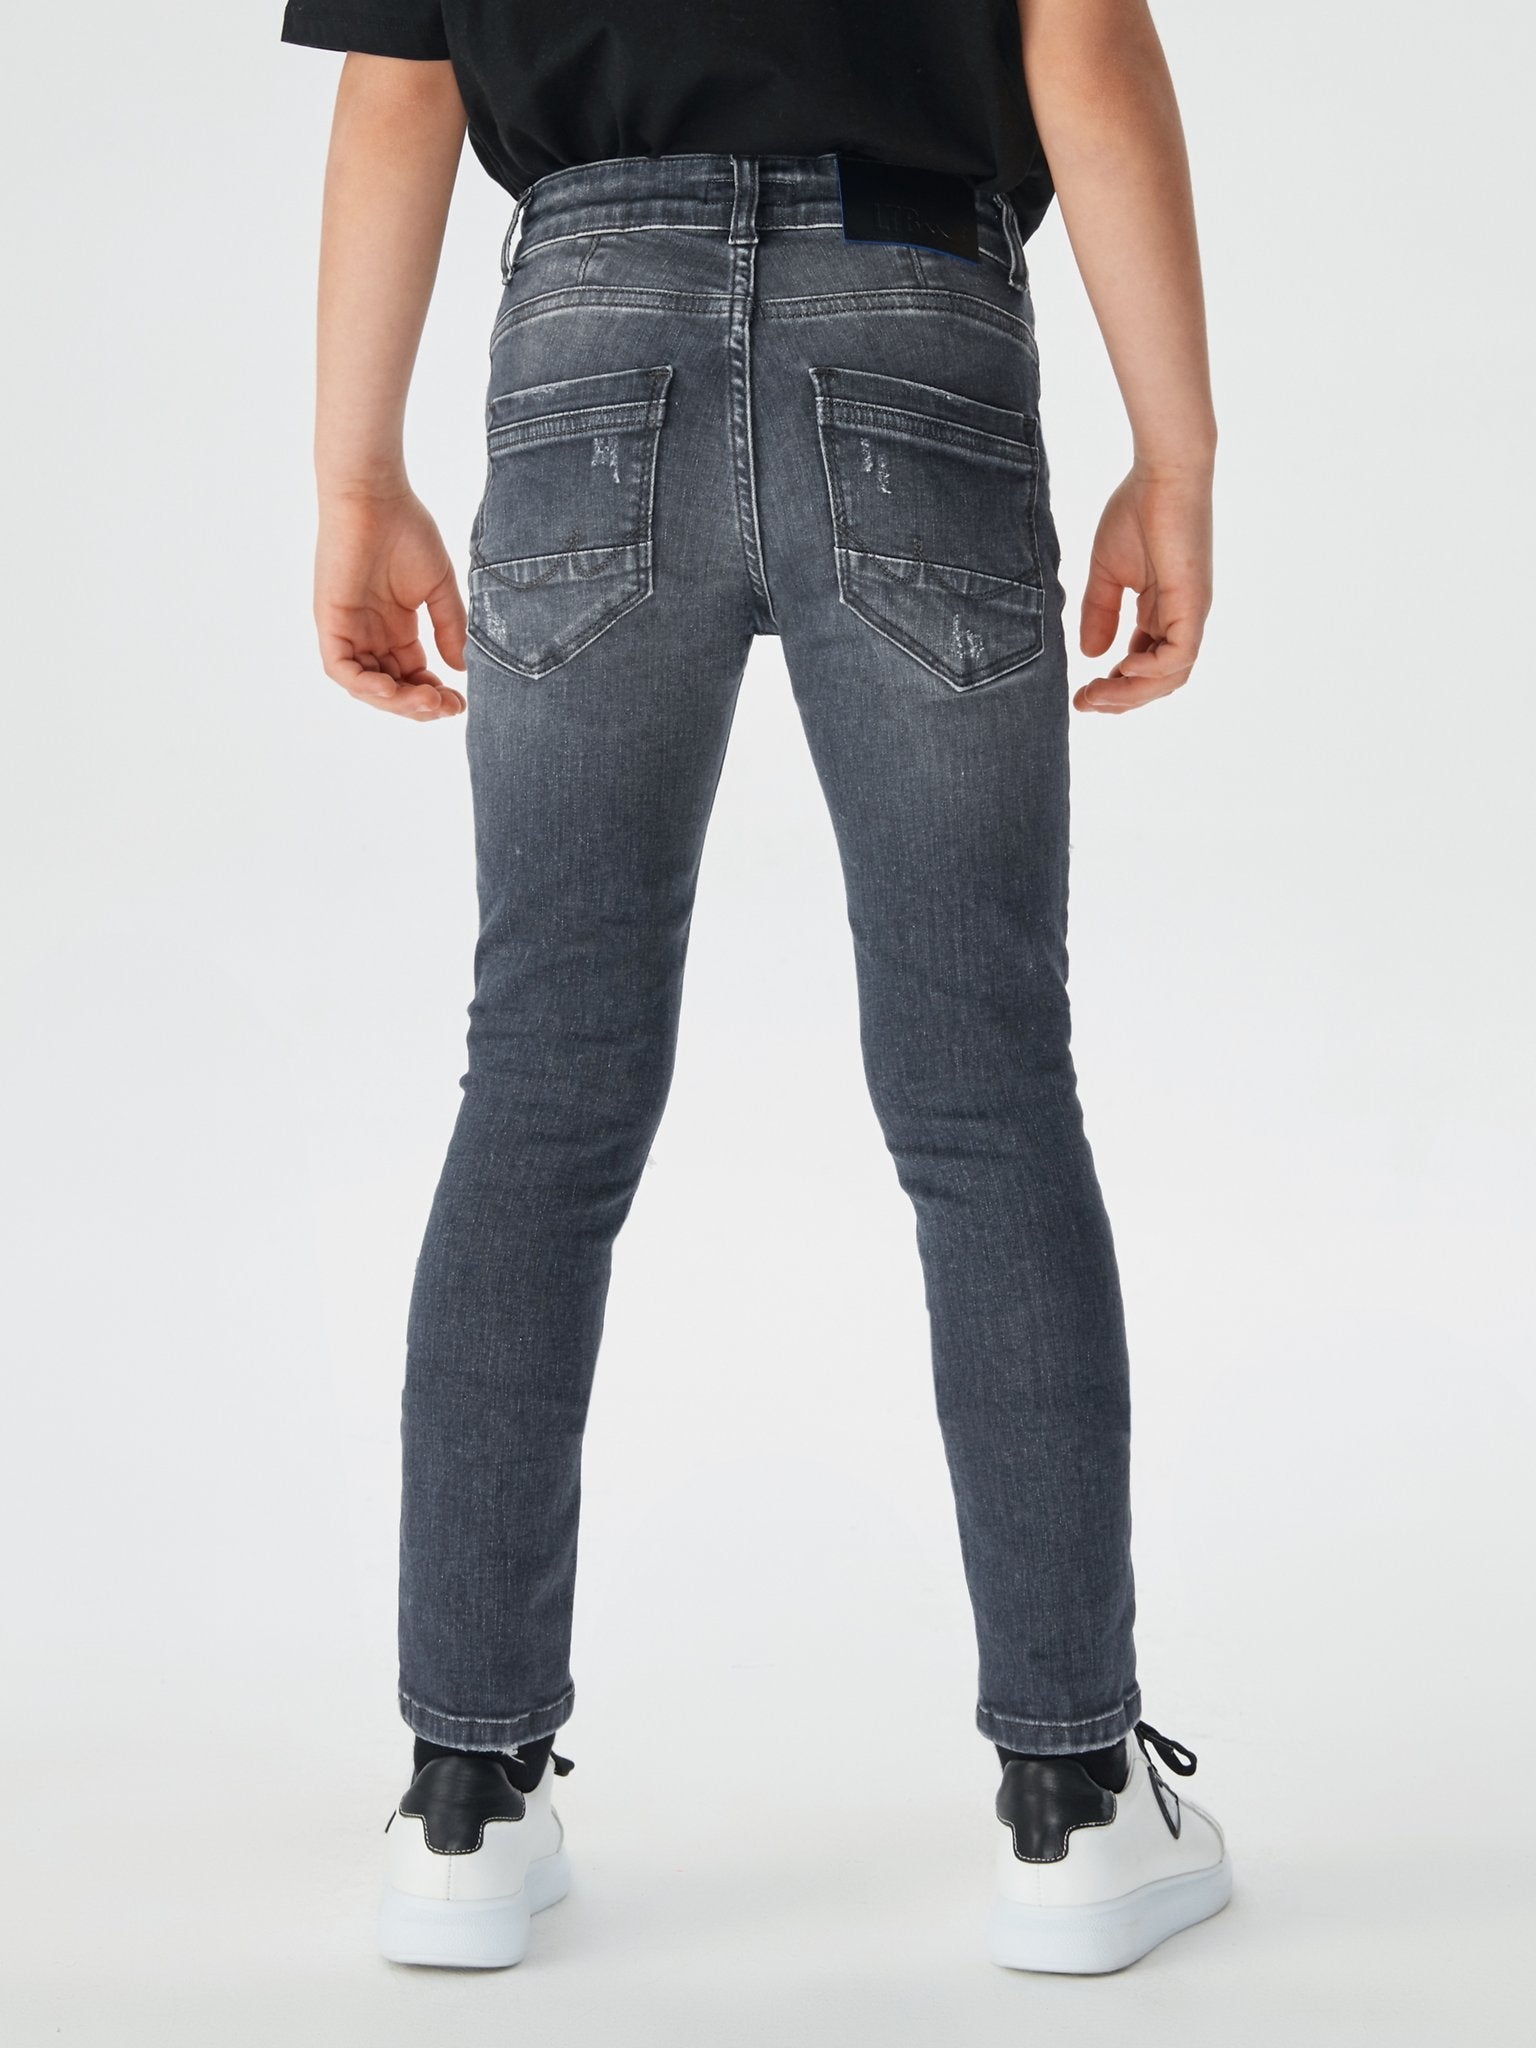 Jongens Jeans RAFIEL BCALI WASH van LTB in de kleur CALI WASH in maat 176.